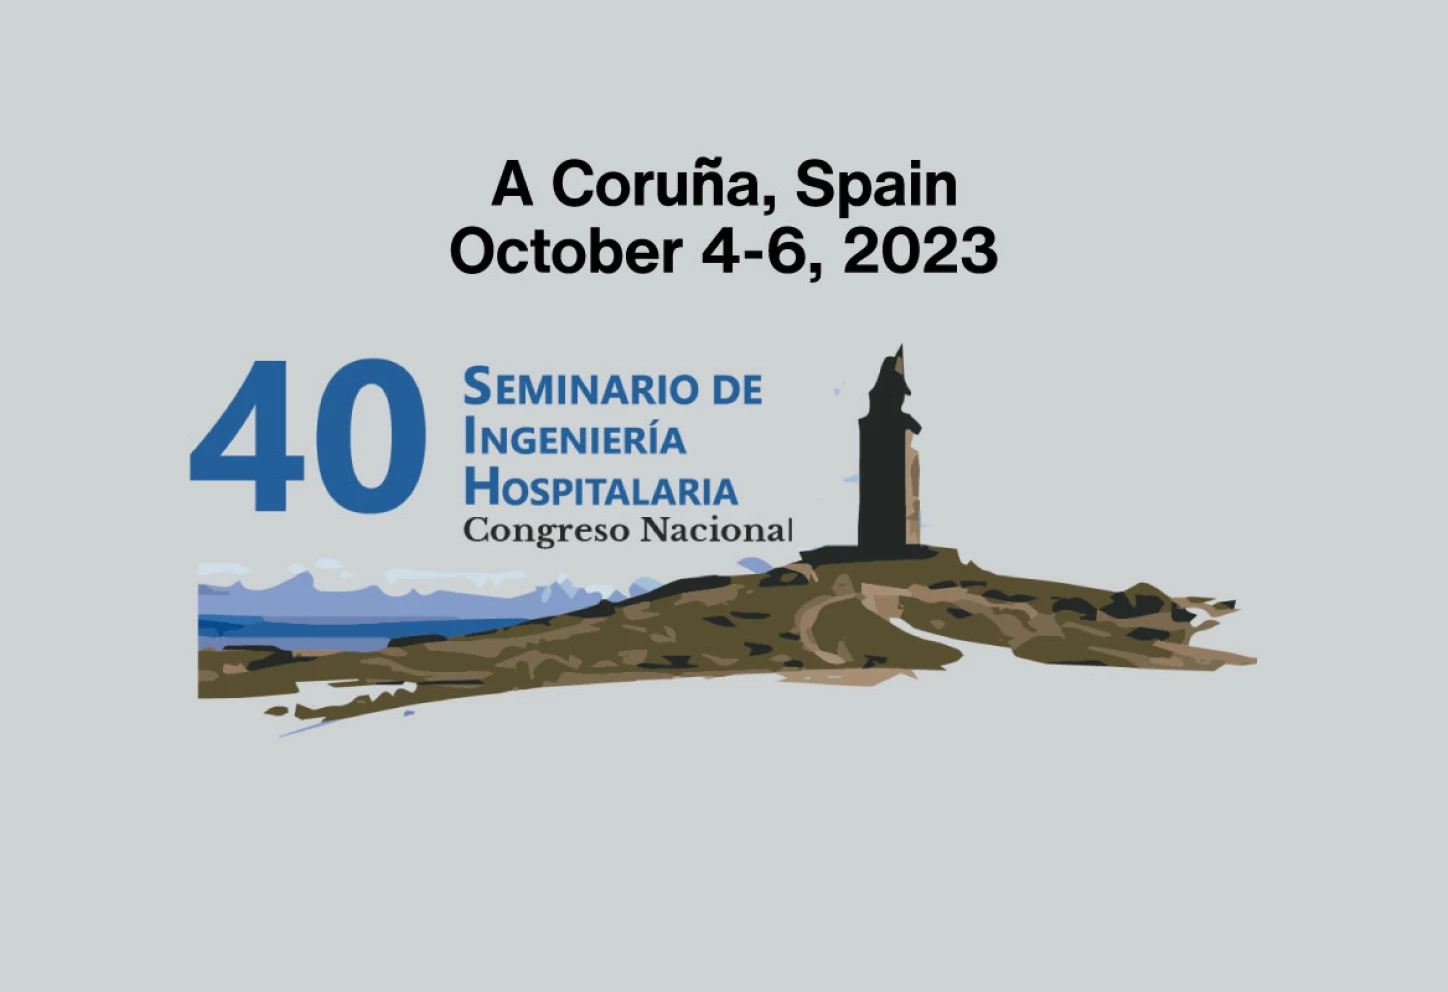 LUXIONA helps shape the future of Healthcare at the 40th Seminario de Ingeniería Hospitalaria, Congreso Nacional